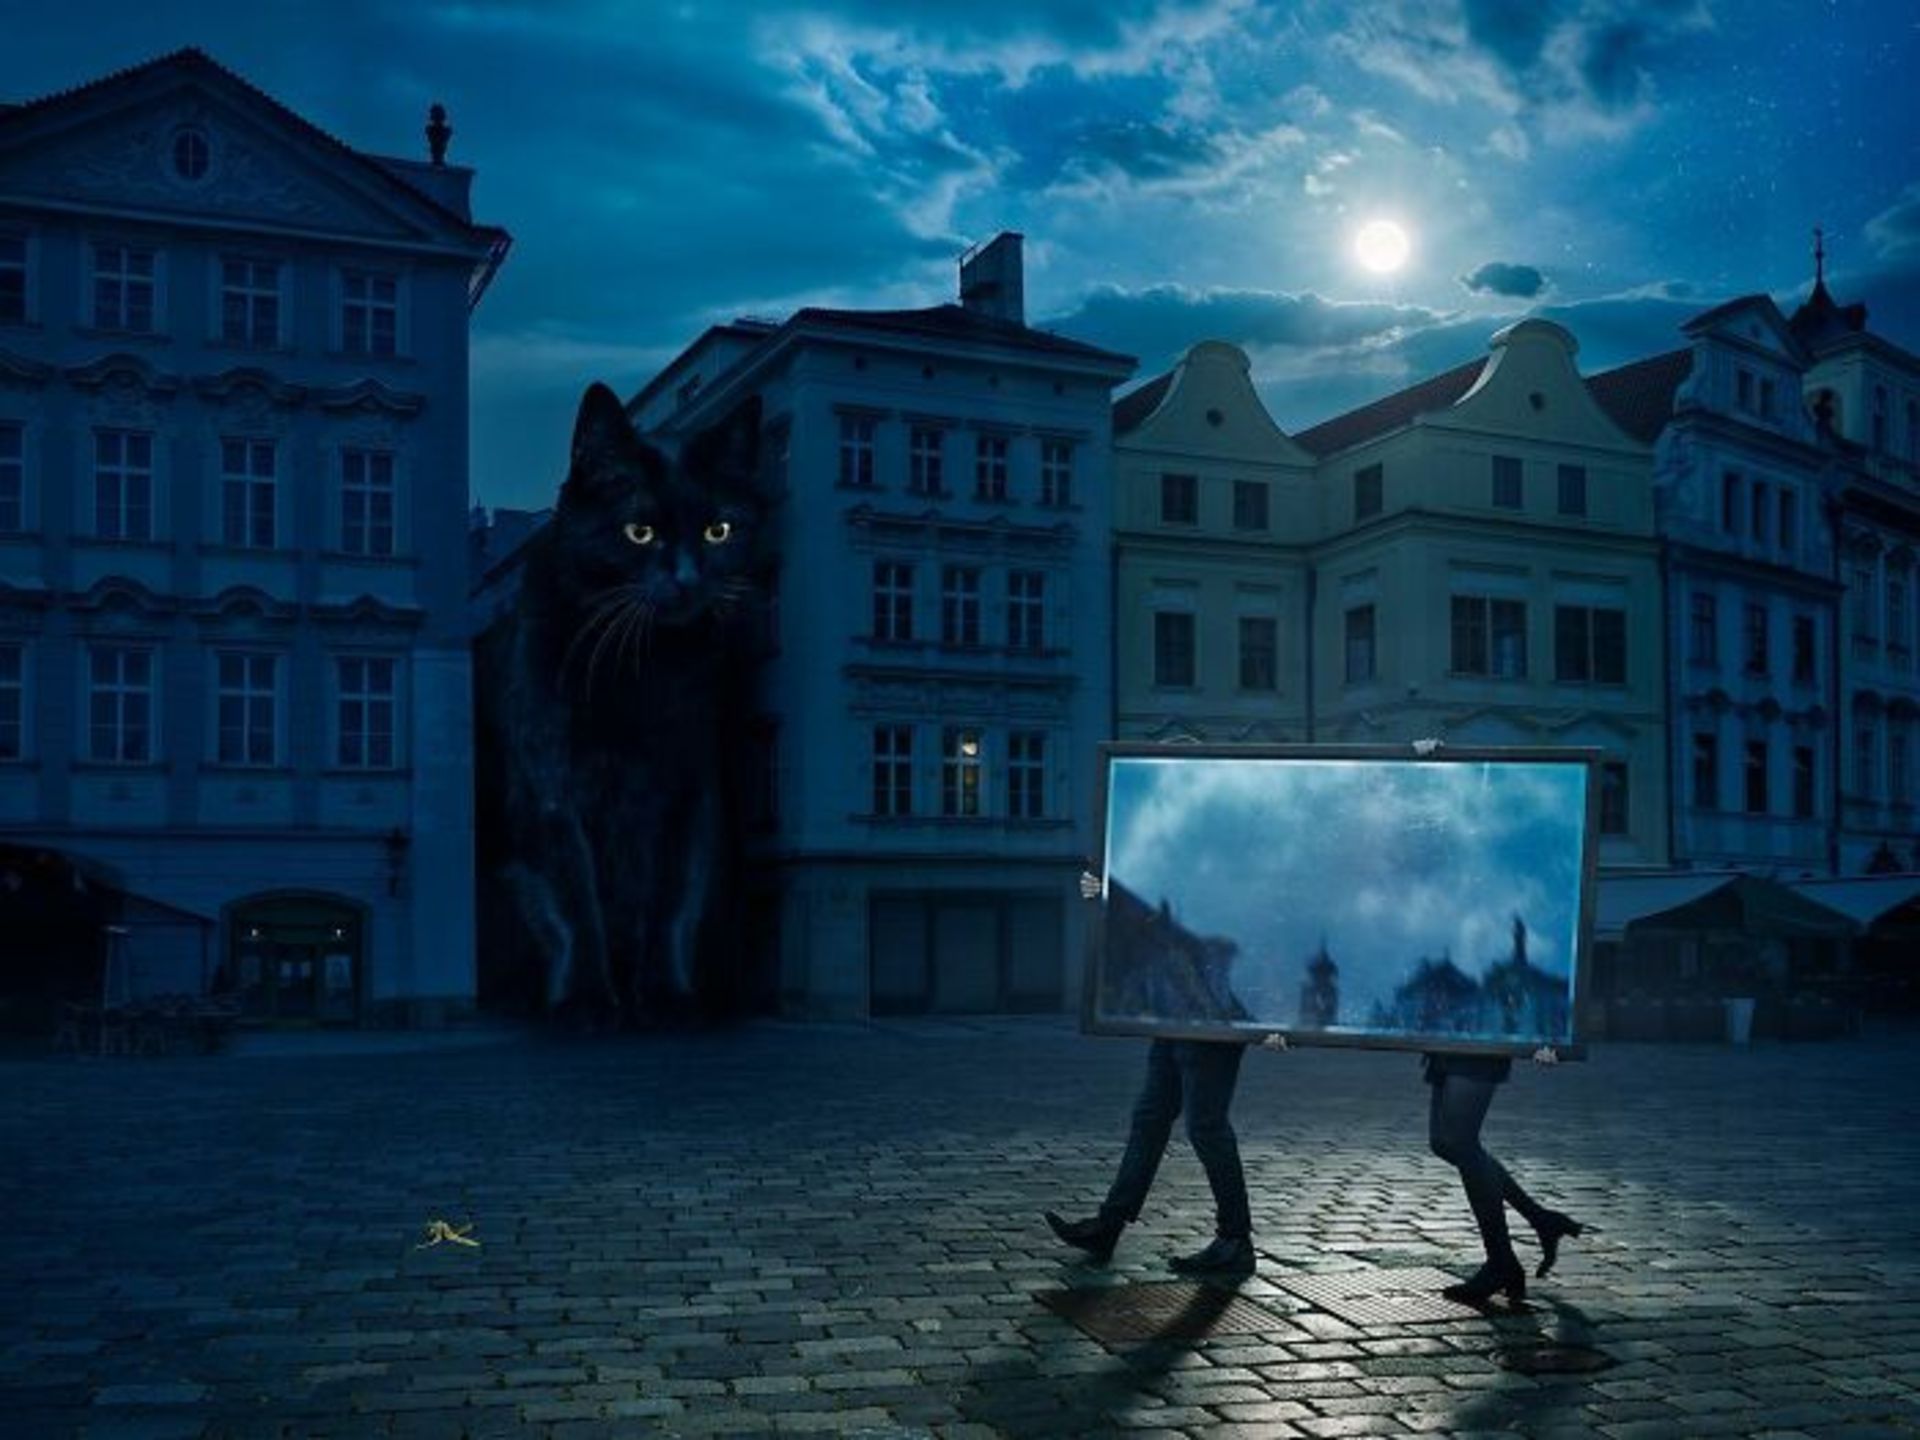 گربه غولپیکر سیاه در میان خانه ها دو آدم در حال حمل آینه شب